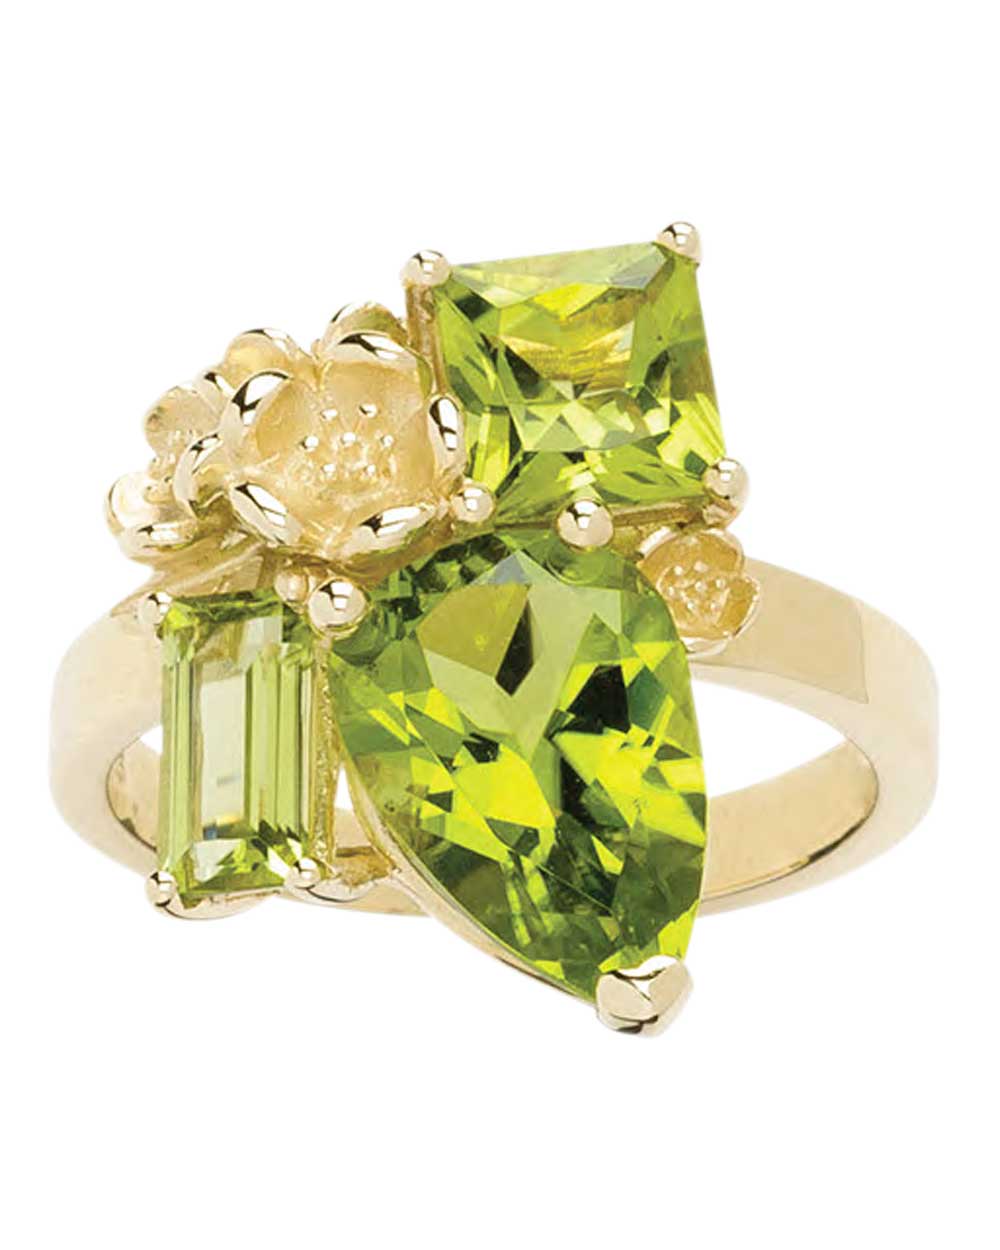 Karen Walker Jewellery ring, $2779